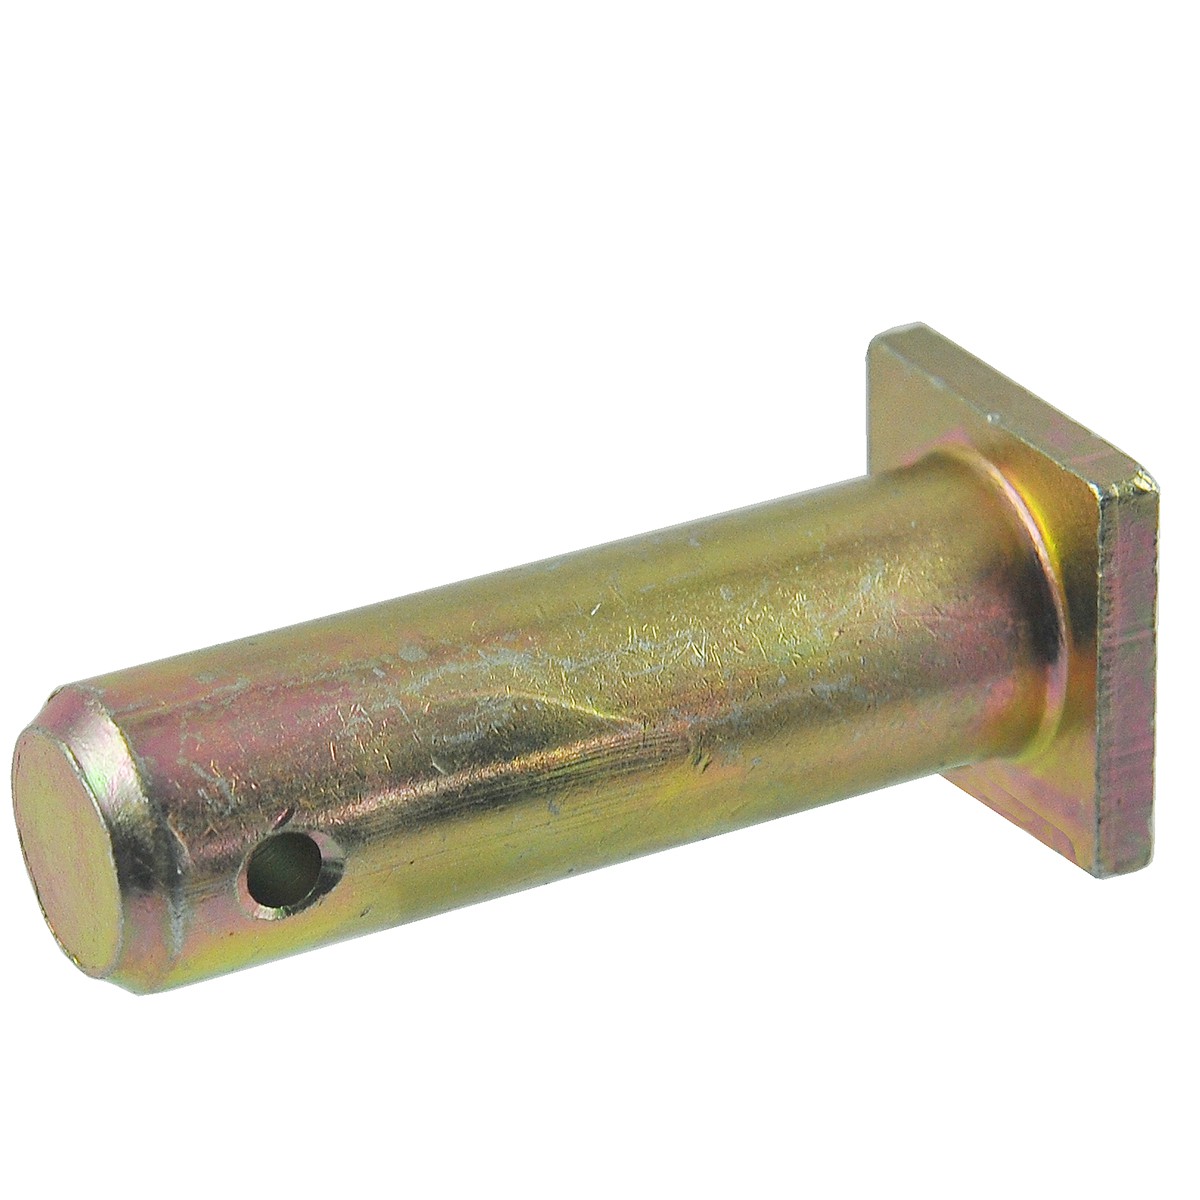 Three-point linkage pin / CAT I / 22 x 78 mm / Kubota M7040/M9000/M9540 / 36530-91543 / 5-25-102-27